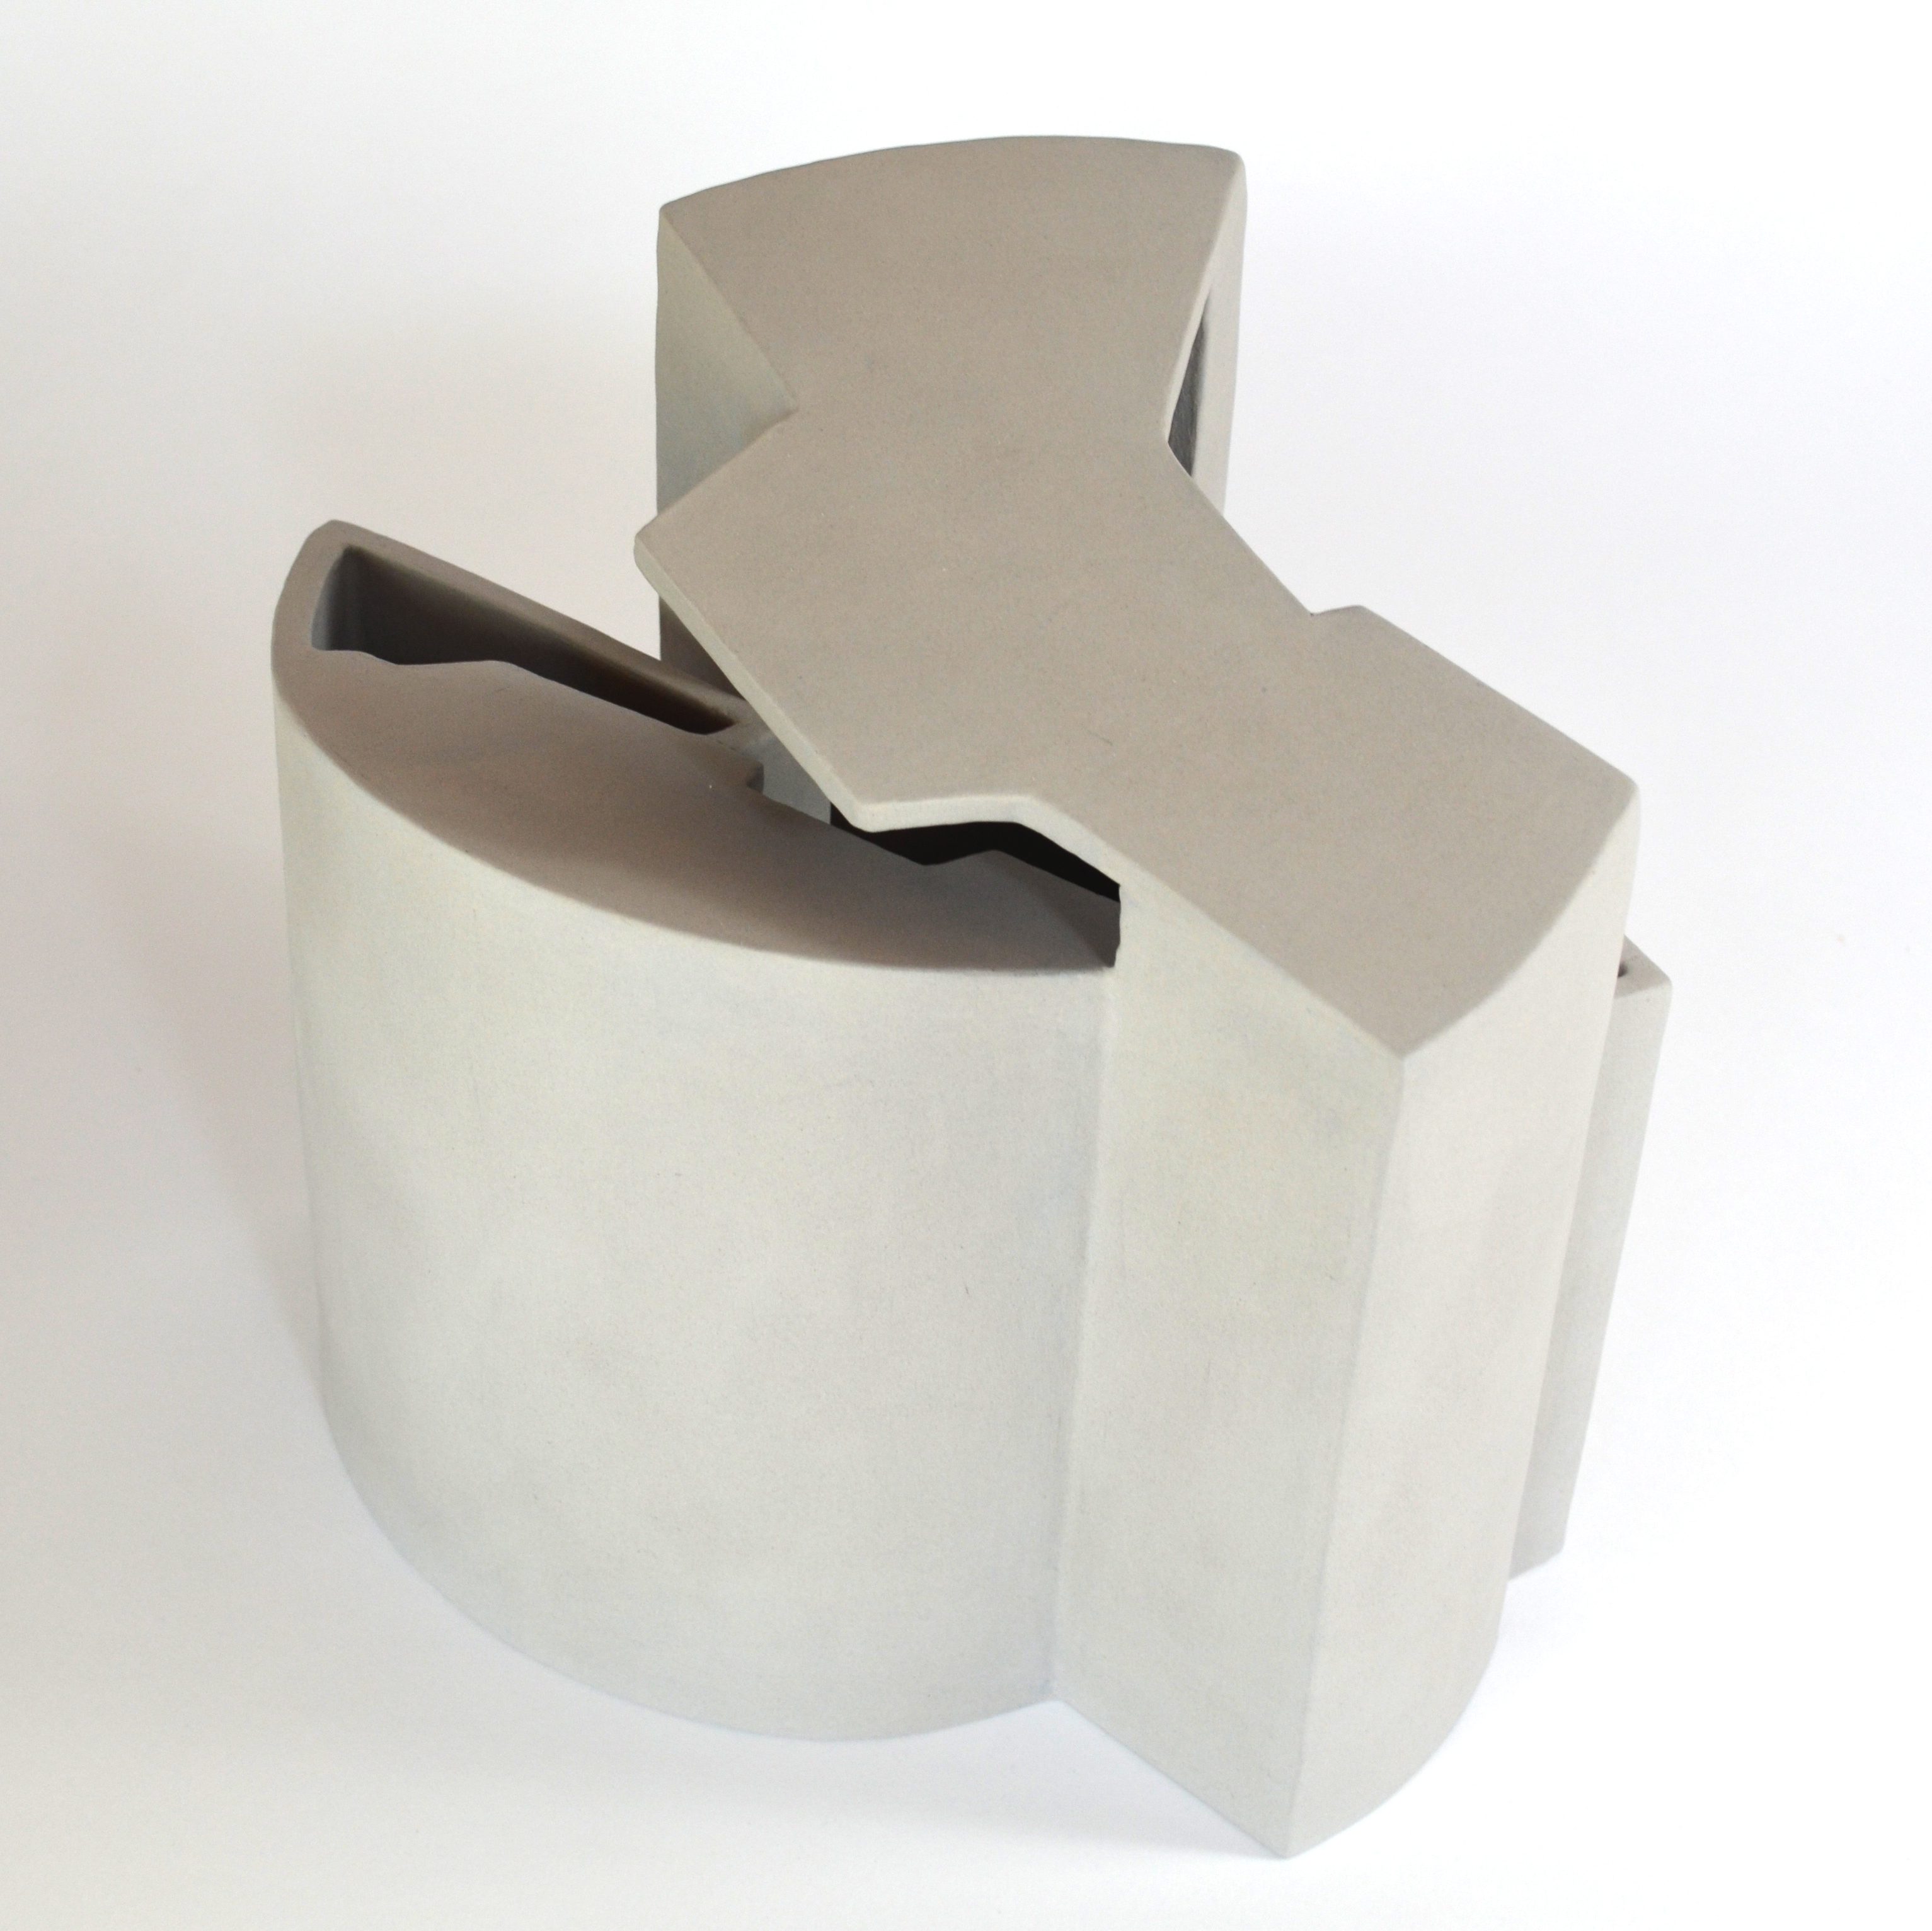 sculpture-contemporary-ceramics